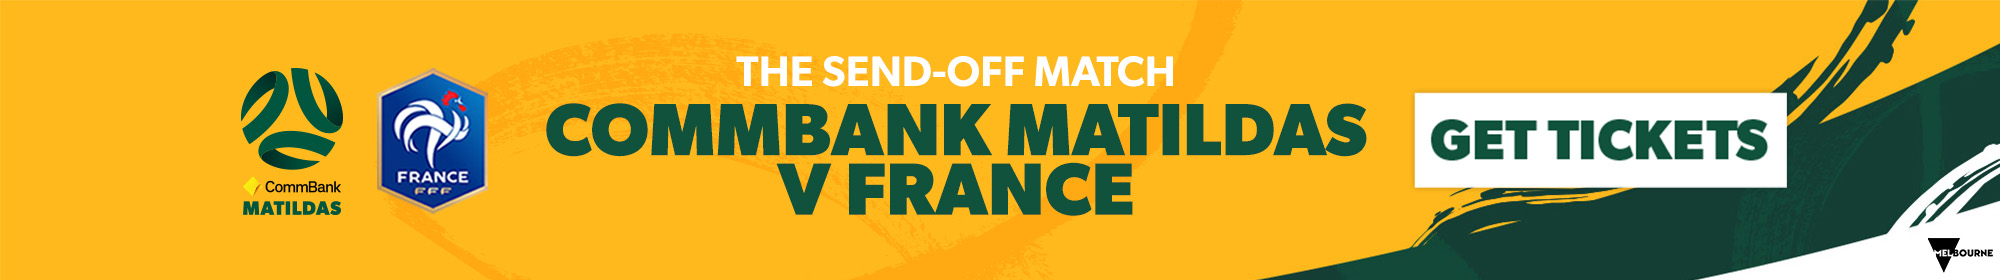 Matildas v France tickets banner